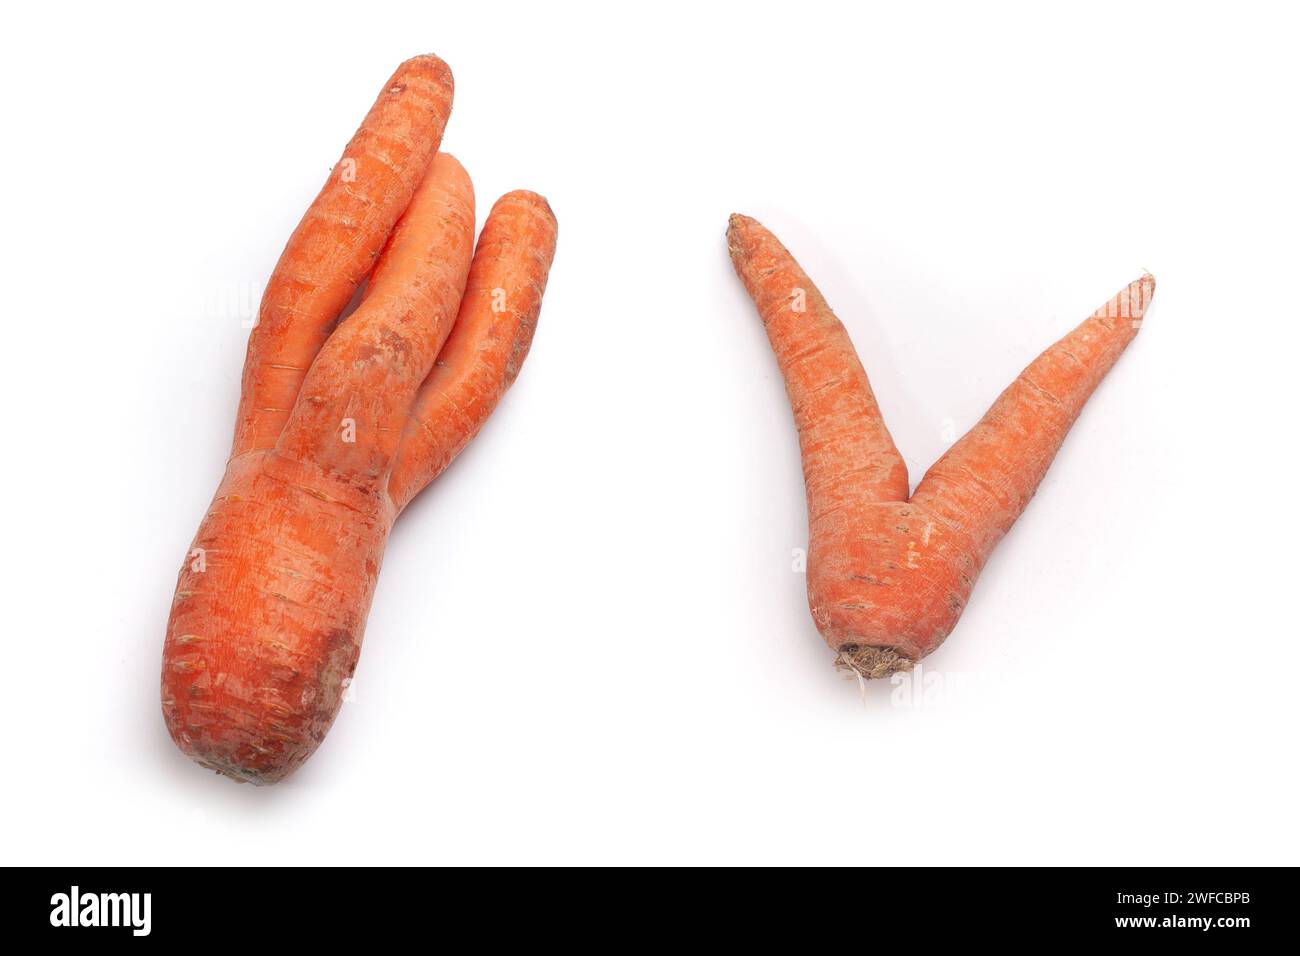 strange shaped carrots isolated on white surface Stock Photo